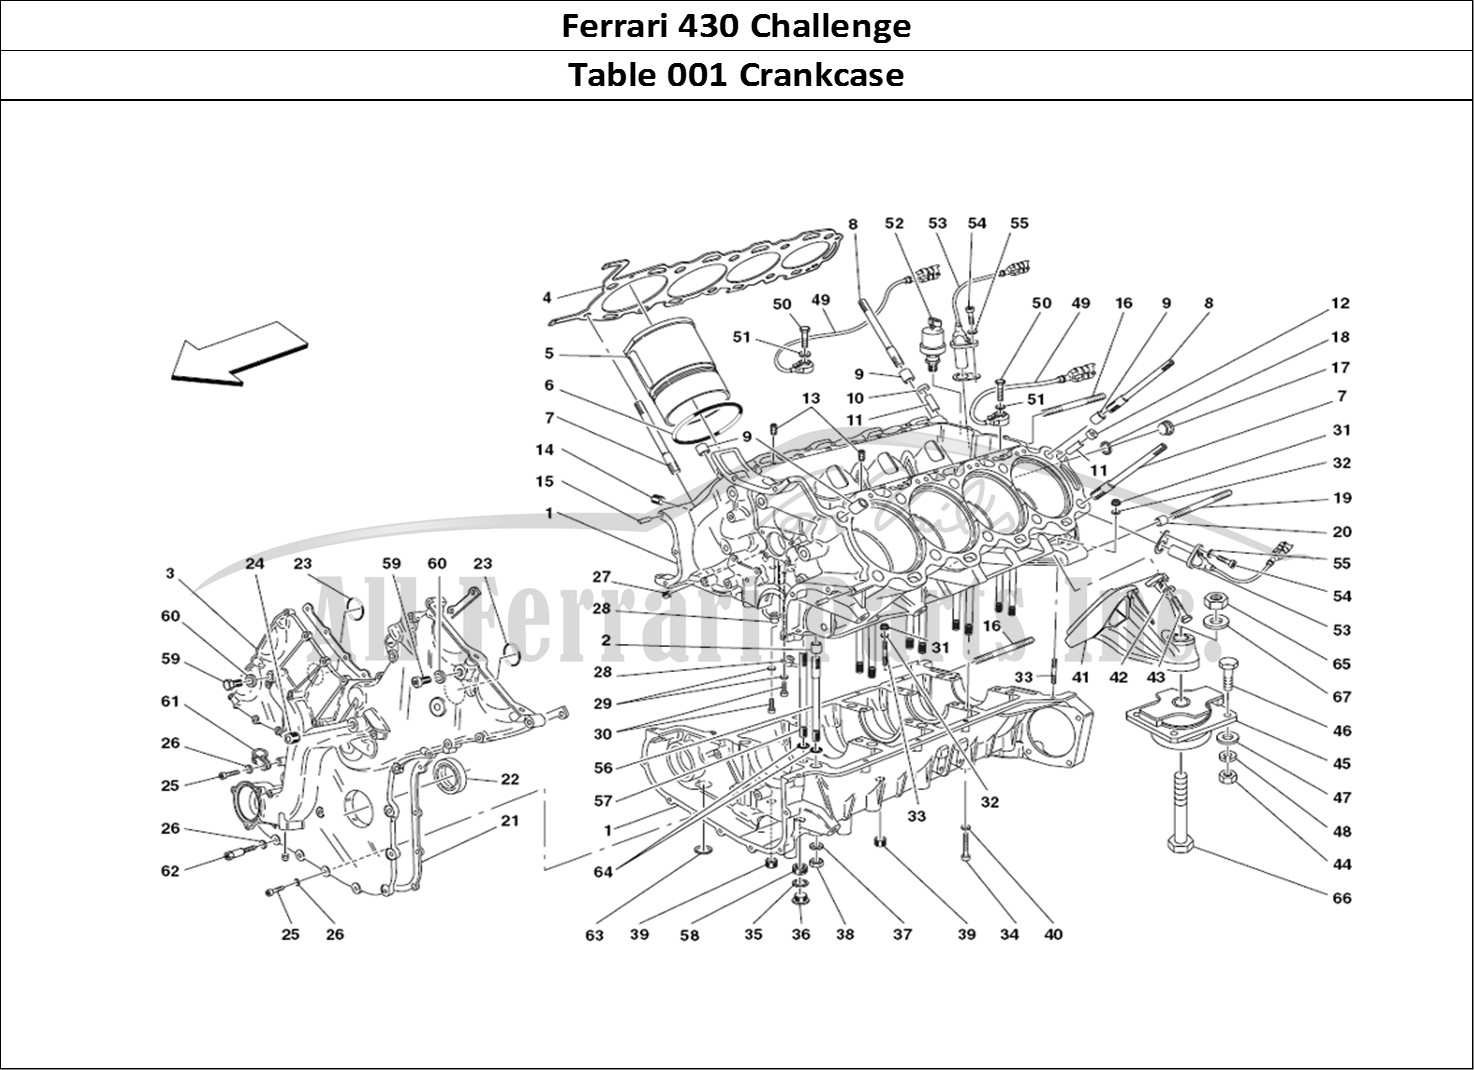 Ferrari Parts Ferrari 430 Challenge (2006) Page 001 Crankcase